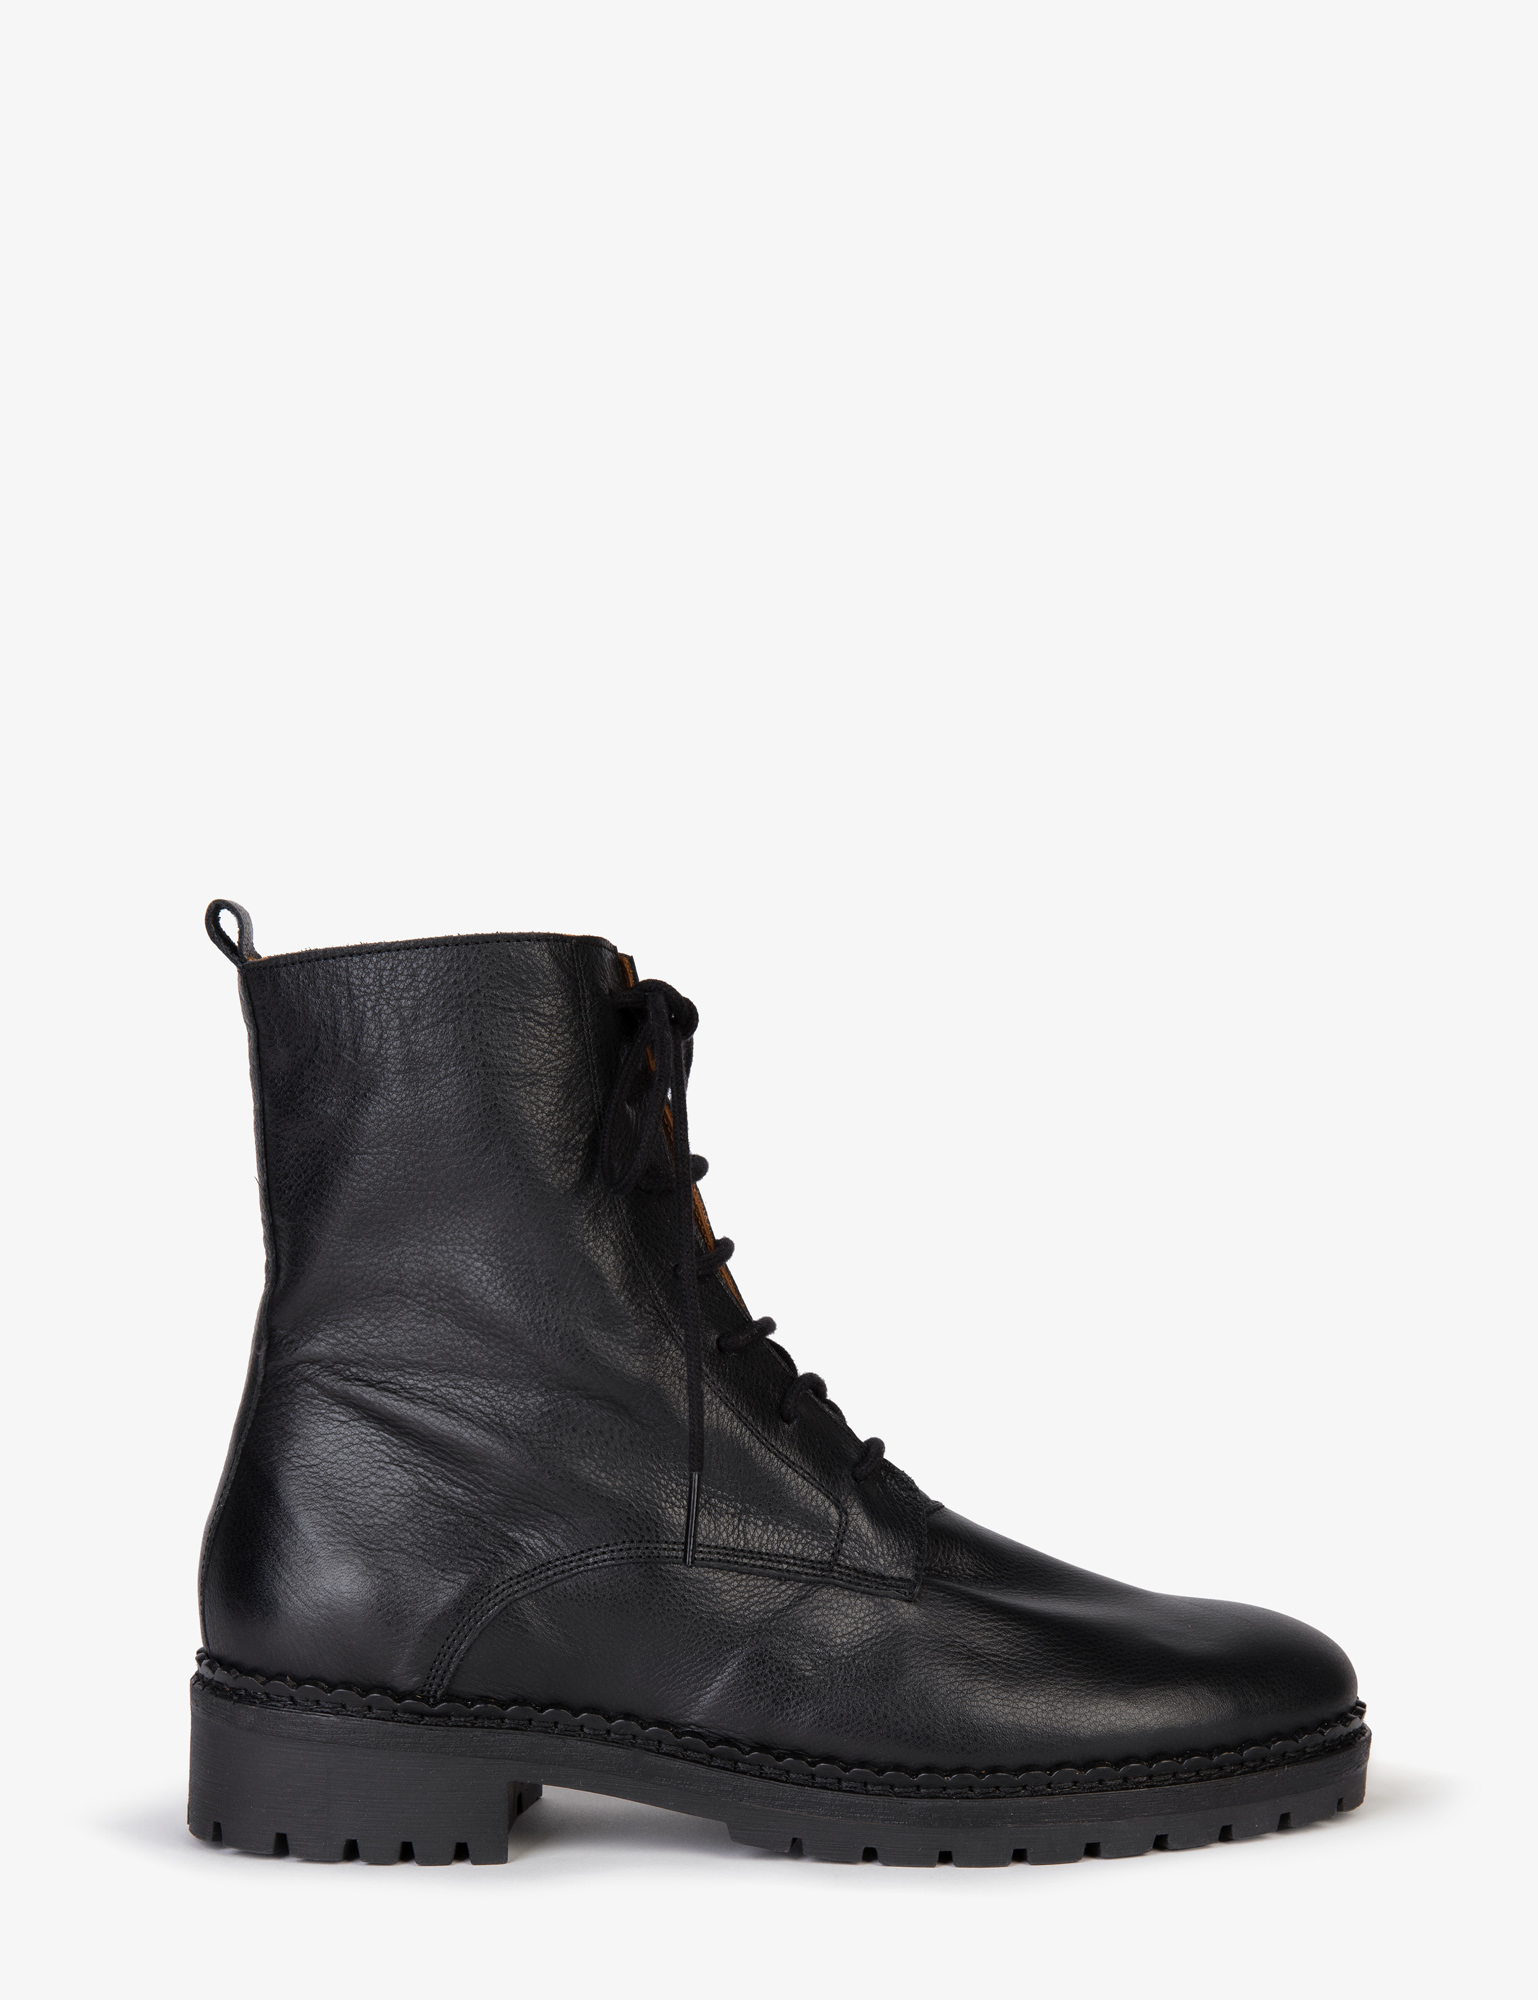 Bartholomew Leather Boot